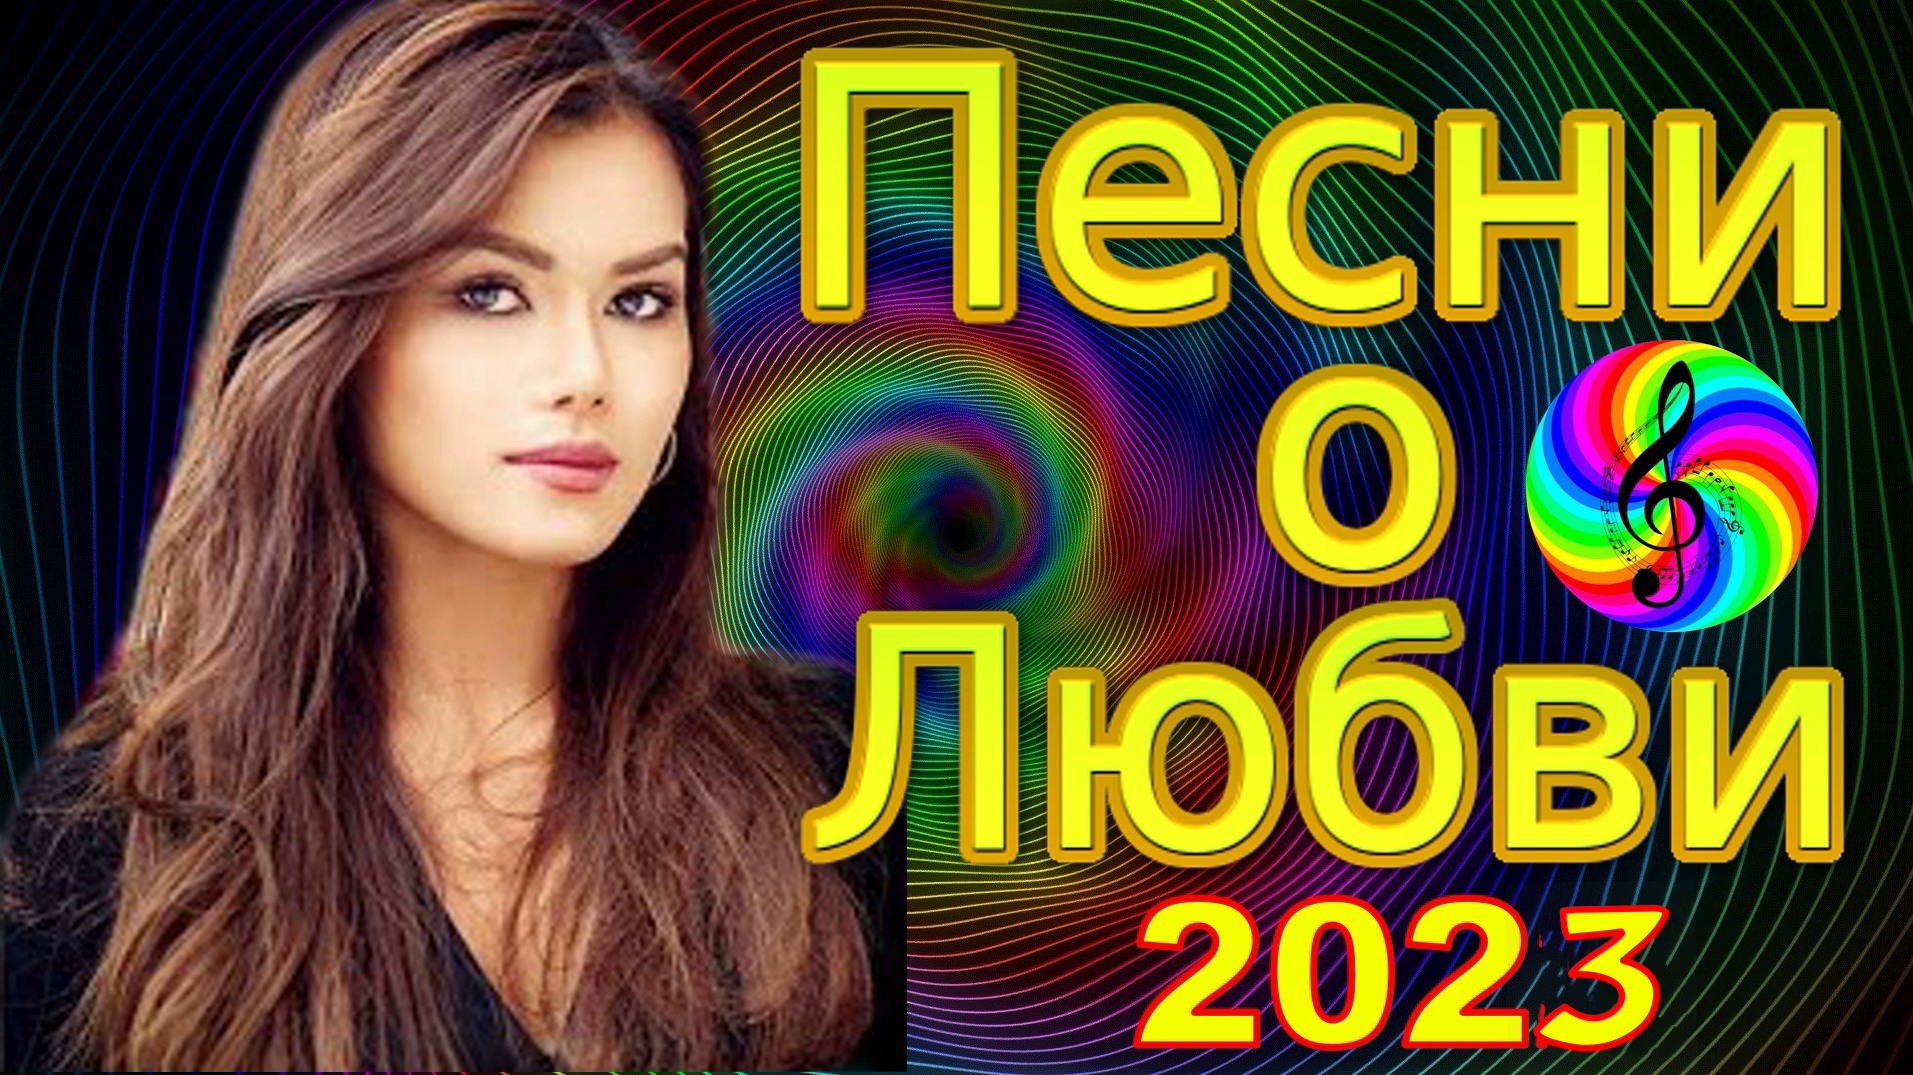 Новые песни сборники 2023. Песни подборка 2023. Удачный песни 2023 год прямой эфир.